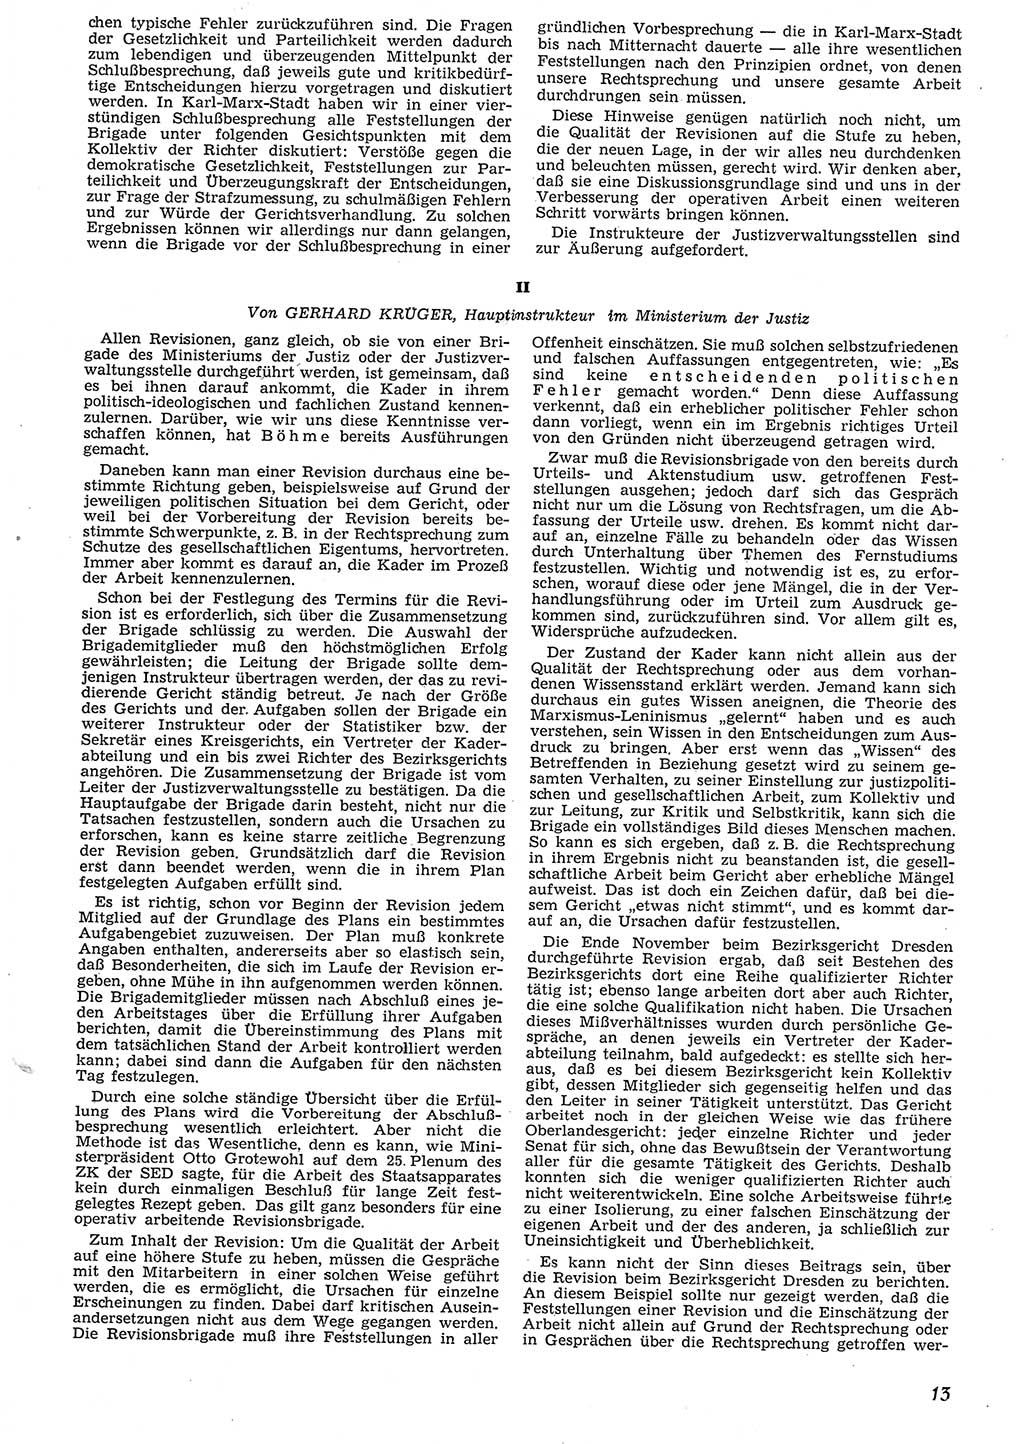 Neue Justiz (NJ), Zeitschrift für Recht und Rechtswissenschaft [Deutsche Demokratische Republik (DDR)], 10. Jahrgang 1956, Seite 13 (NJ DDR 1956, S. 13)